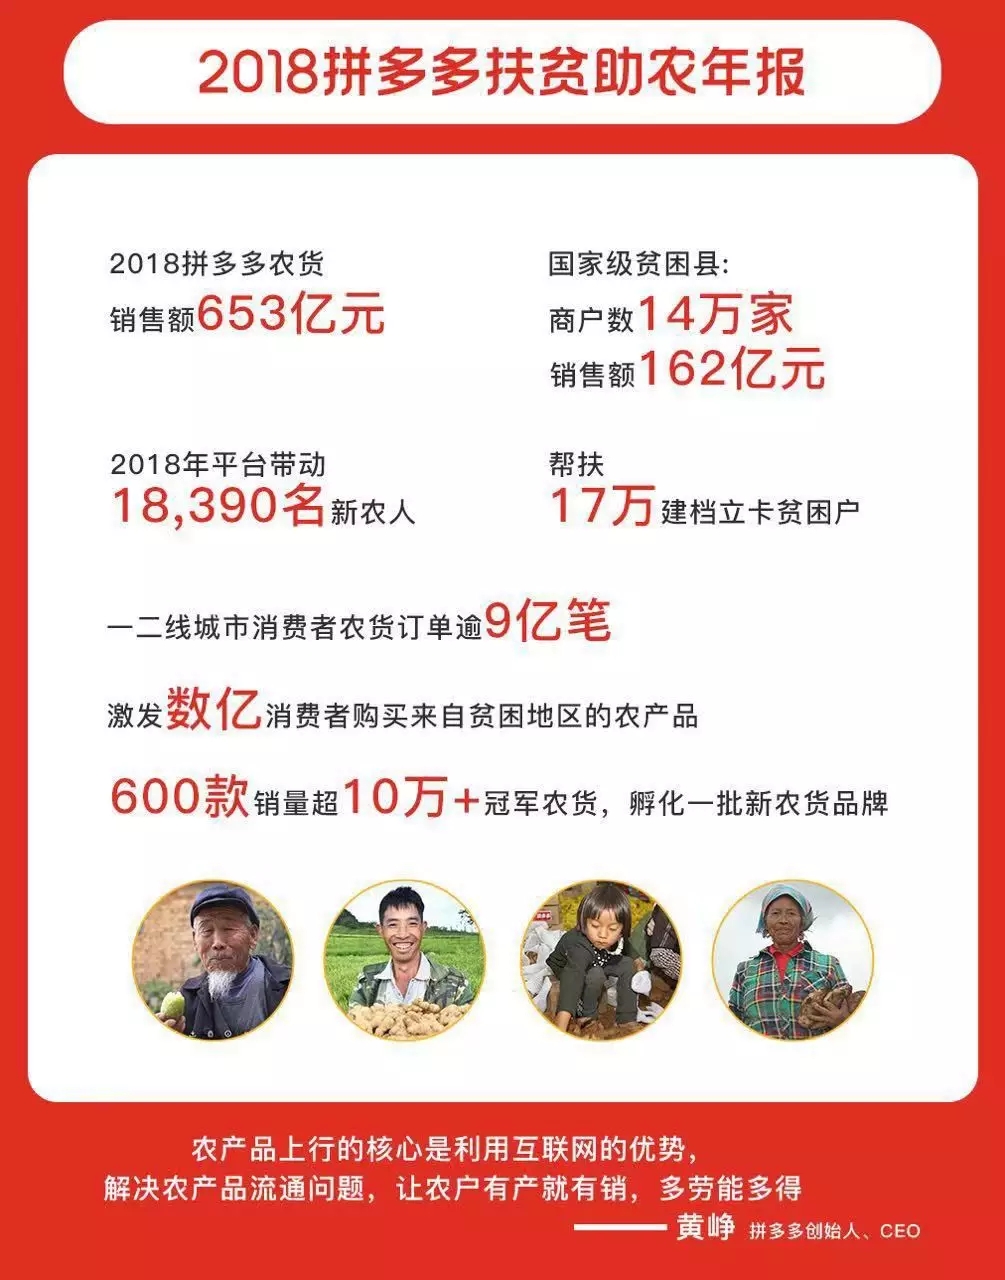 中国最大农产品电商诞生:一年卖出653亿,老板